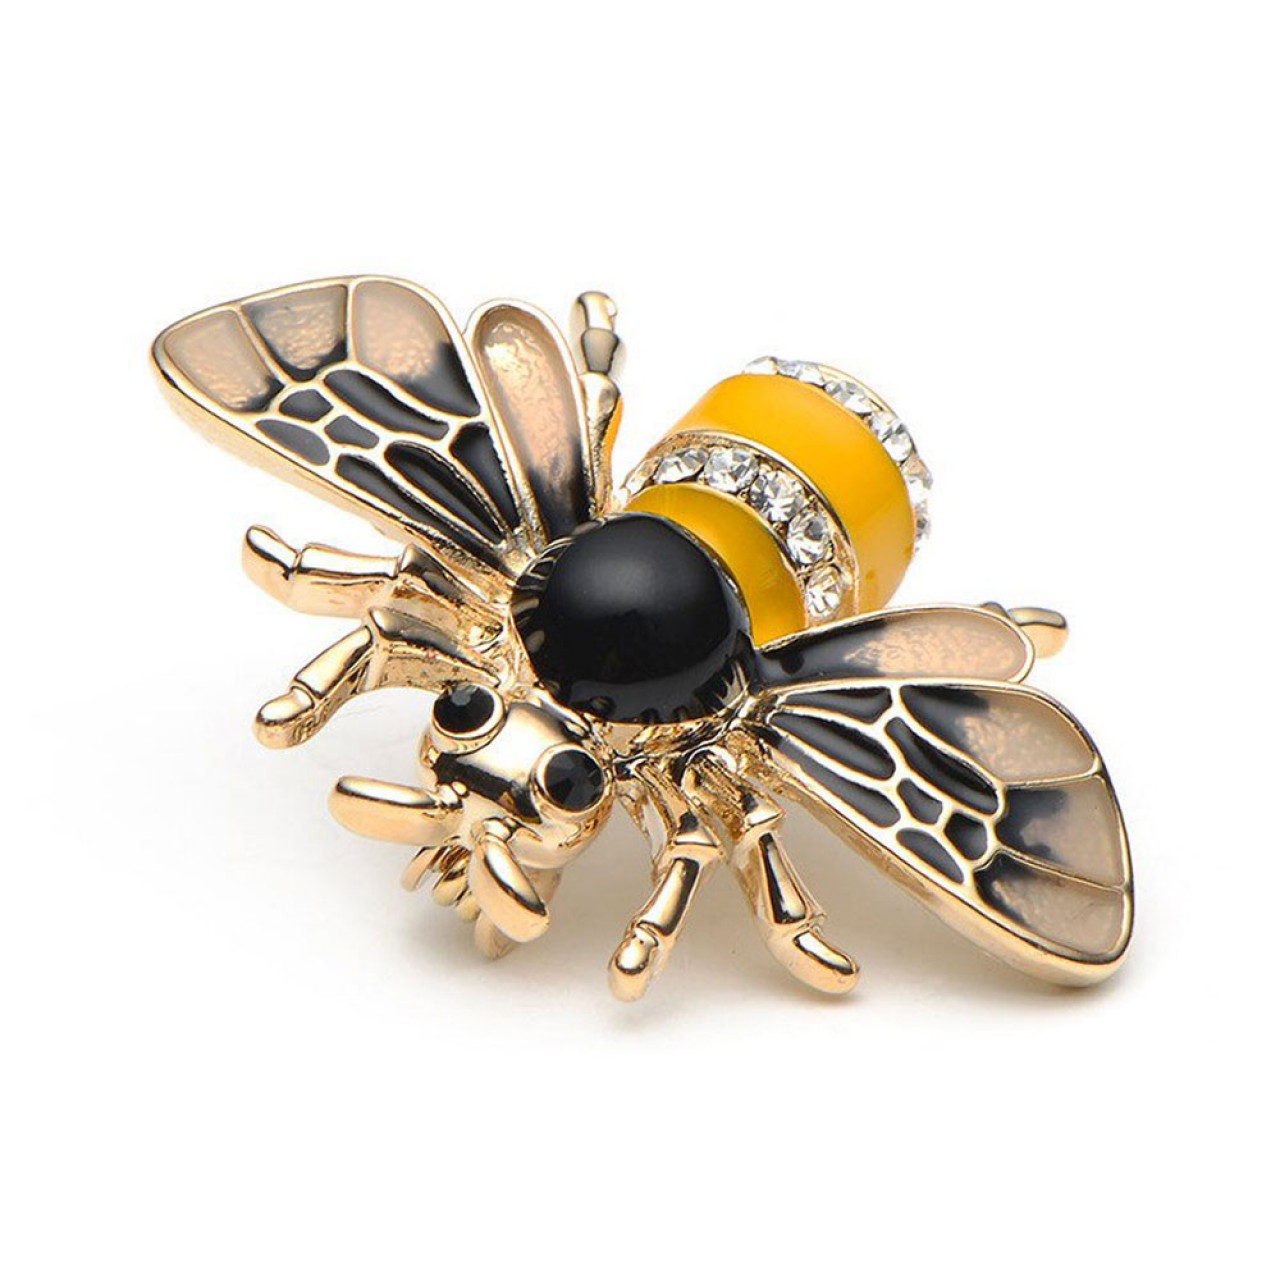 Γυναικεία Χρυσή Διακοσμητική Καρφίτσα Πέτου Μέλισσα - 4425